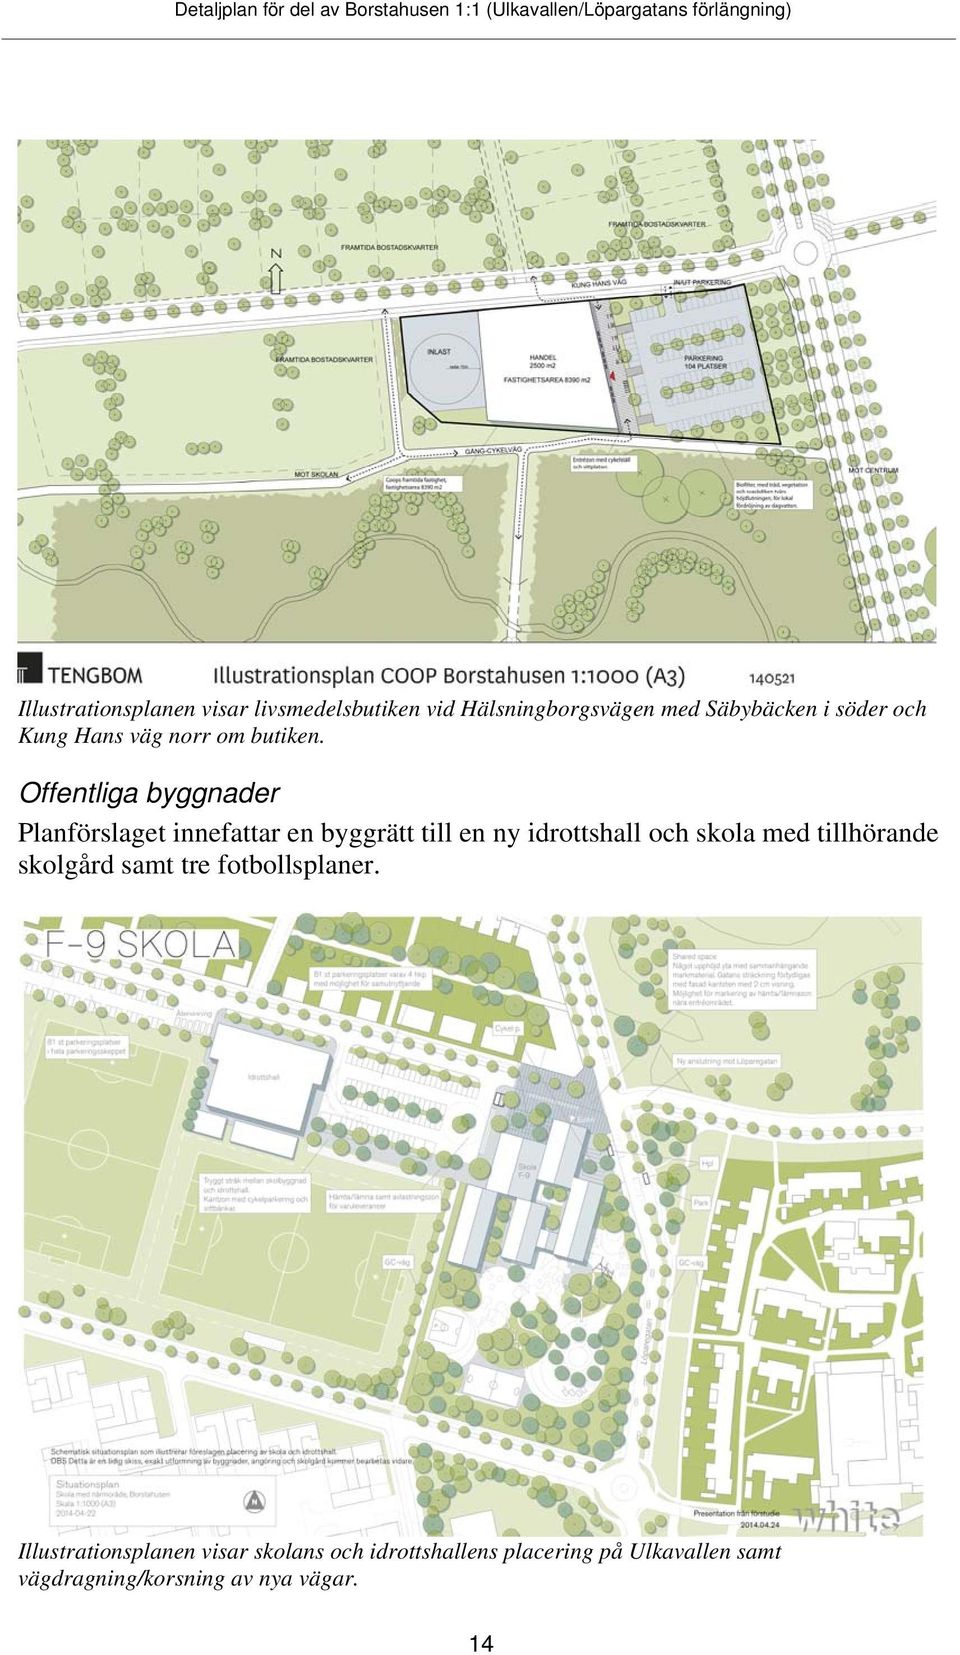 Offentliga byggnader Planförslaget innefattar en byggrätt till en ny idrottshall och skola med tillhörande